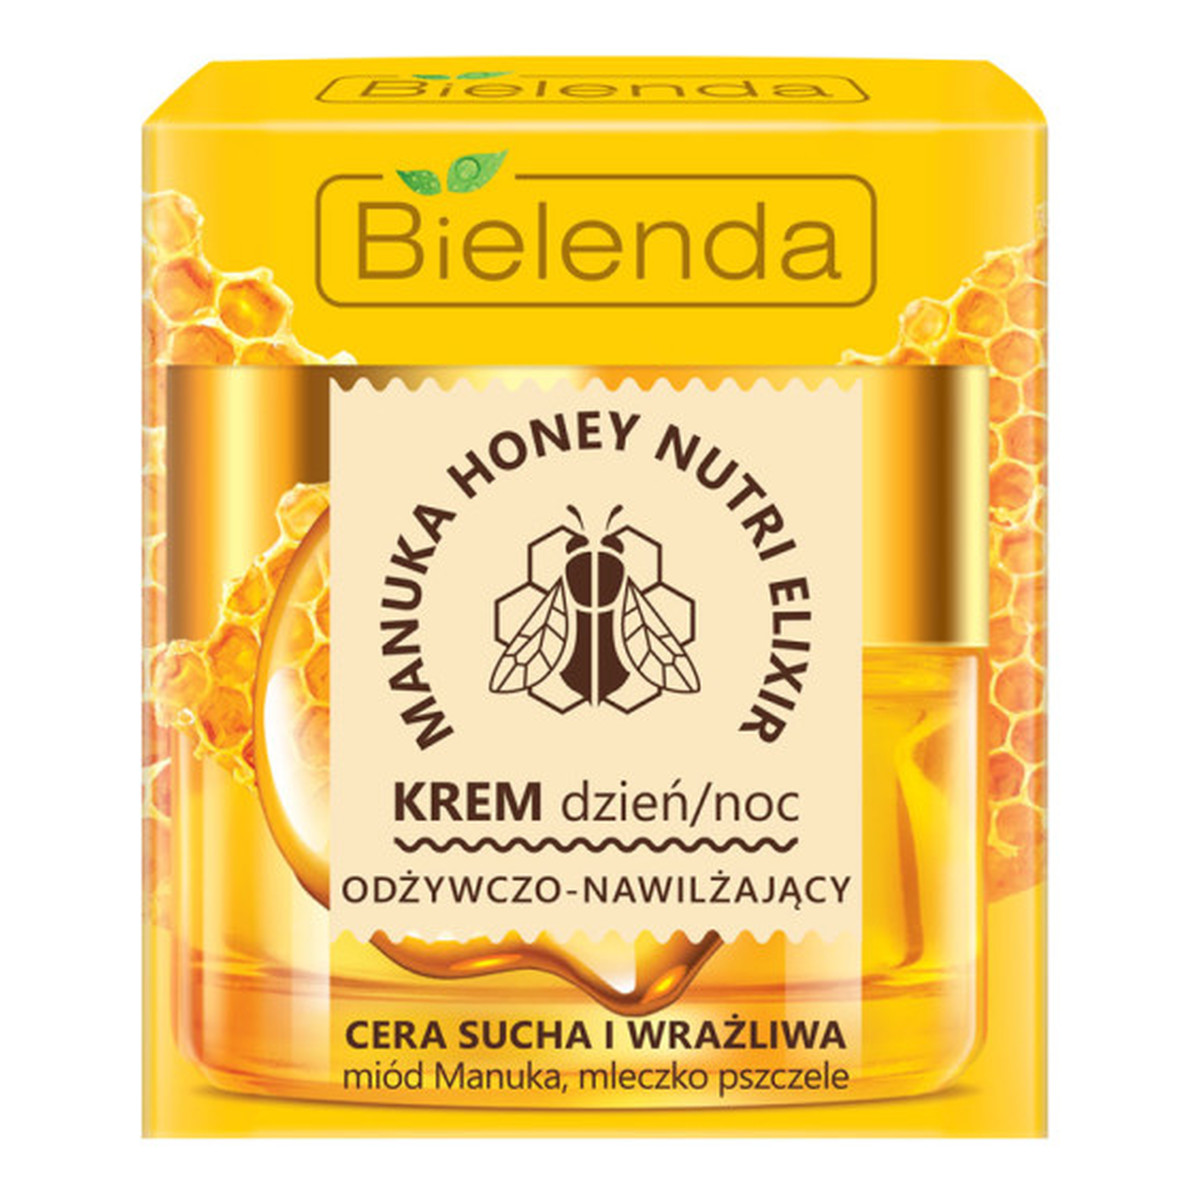 Bielenda Manuka Honey Nutri Elixir Krem odżywczo-nawilżający na dzień i noc 50ml